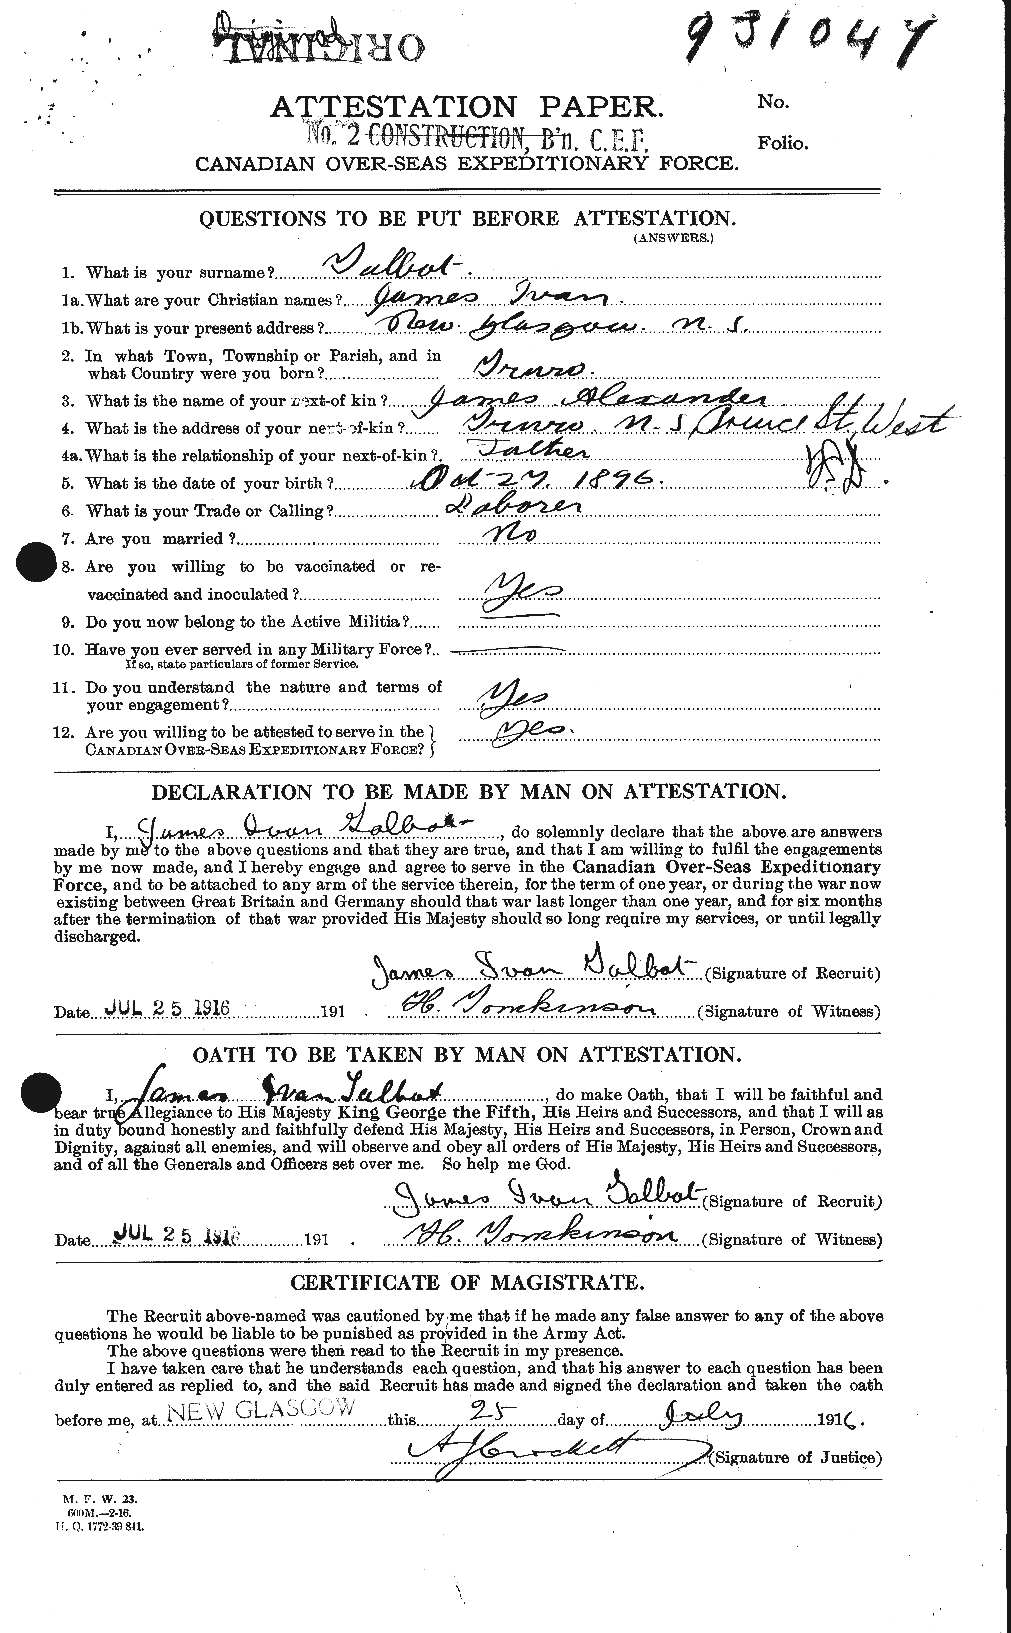 Dossiers du Personnel de la Première Guerre mondiale - CEC 126867a